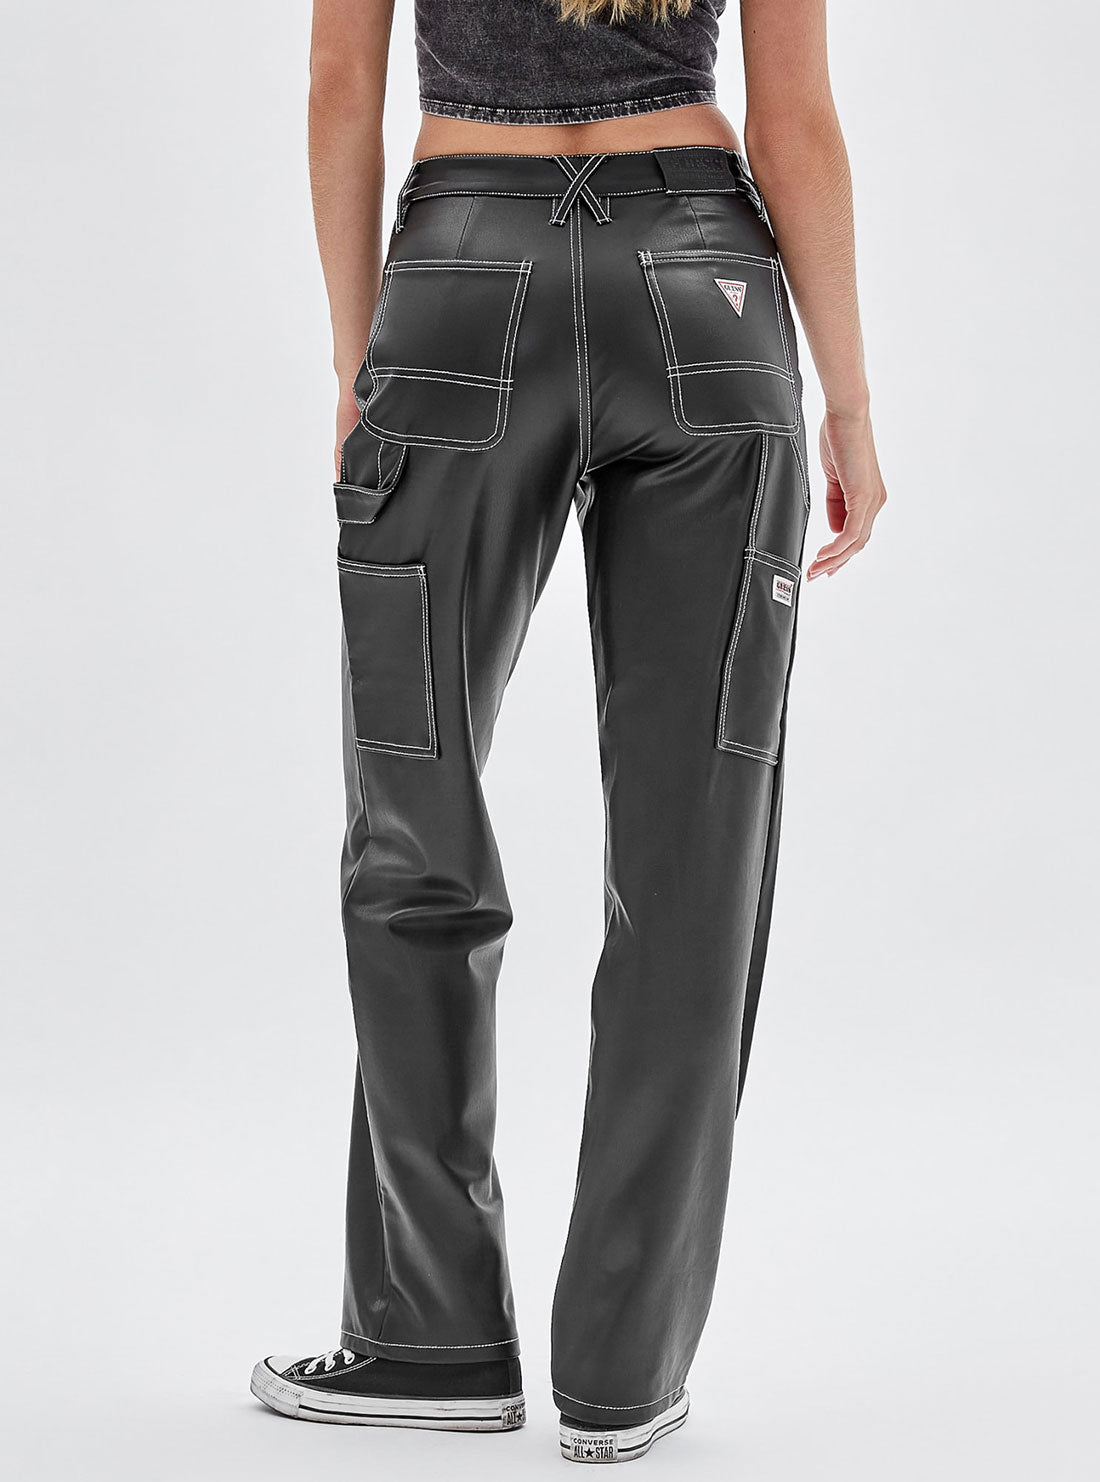 GUESS Women's Guess Originals Black Faux Leather Carpenter Pants W2BG10K8S30 Back View